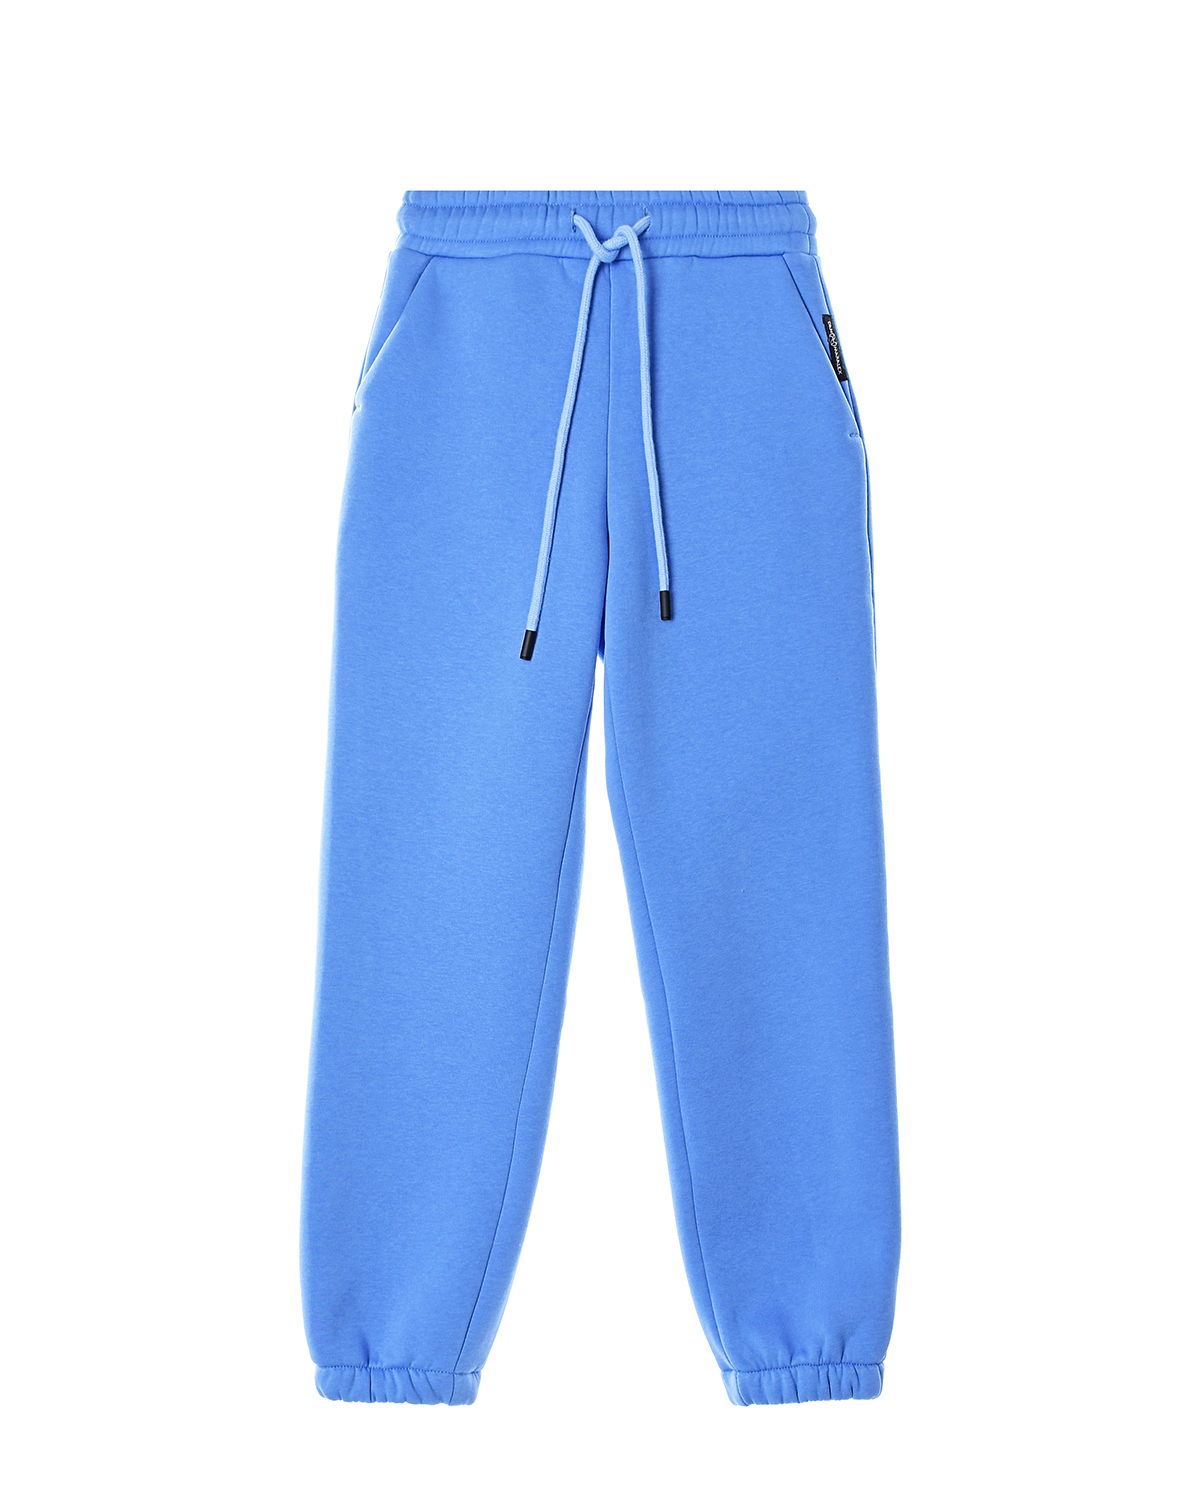 Голубые спортивные брюки из футера Dan Maralex детские, размер 128, цвет голубой - фото 1